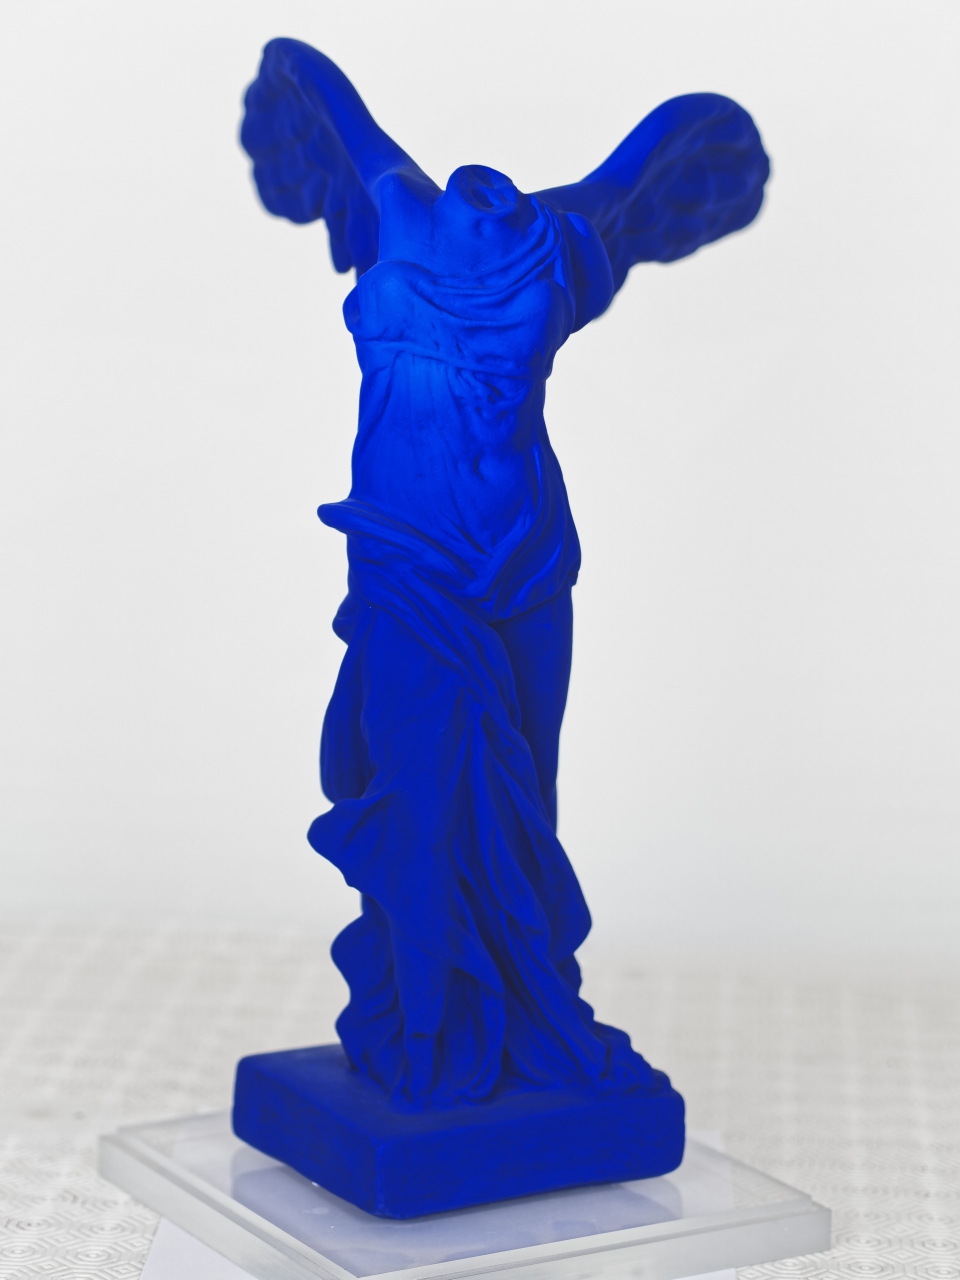 Victoire Bleue, Blue Victory, 40 cm (EUR 700)